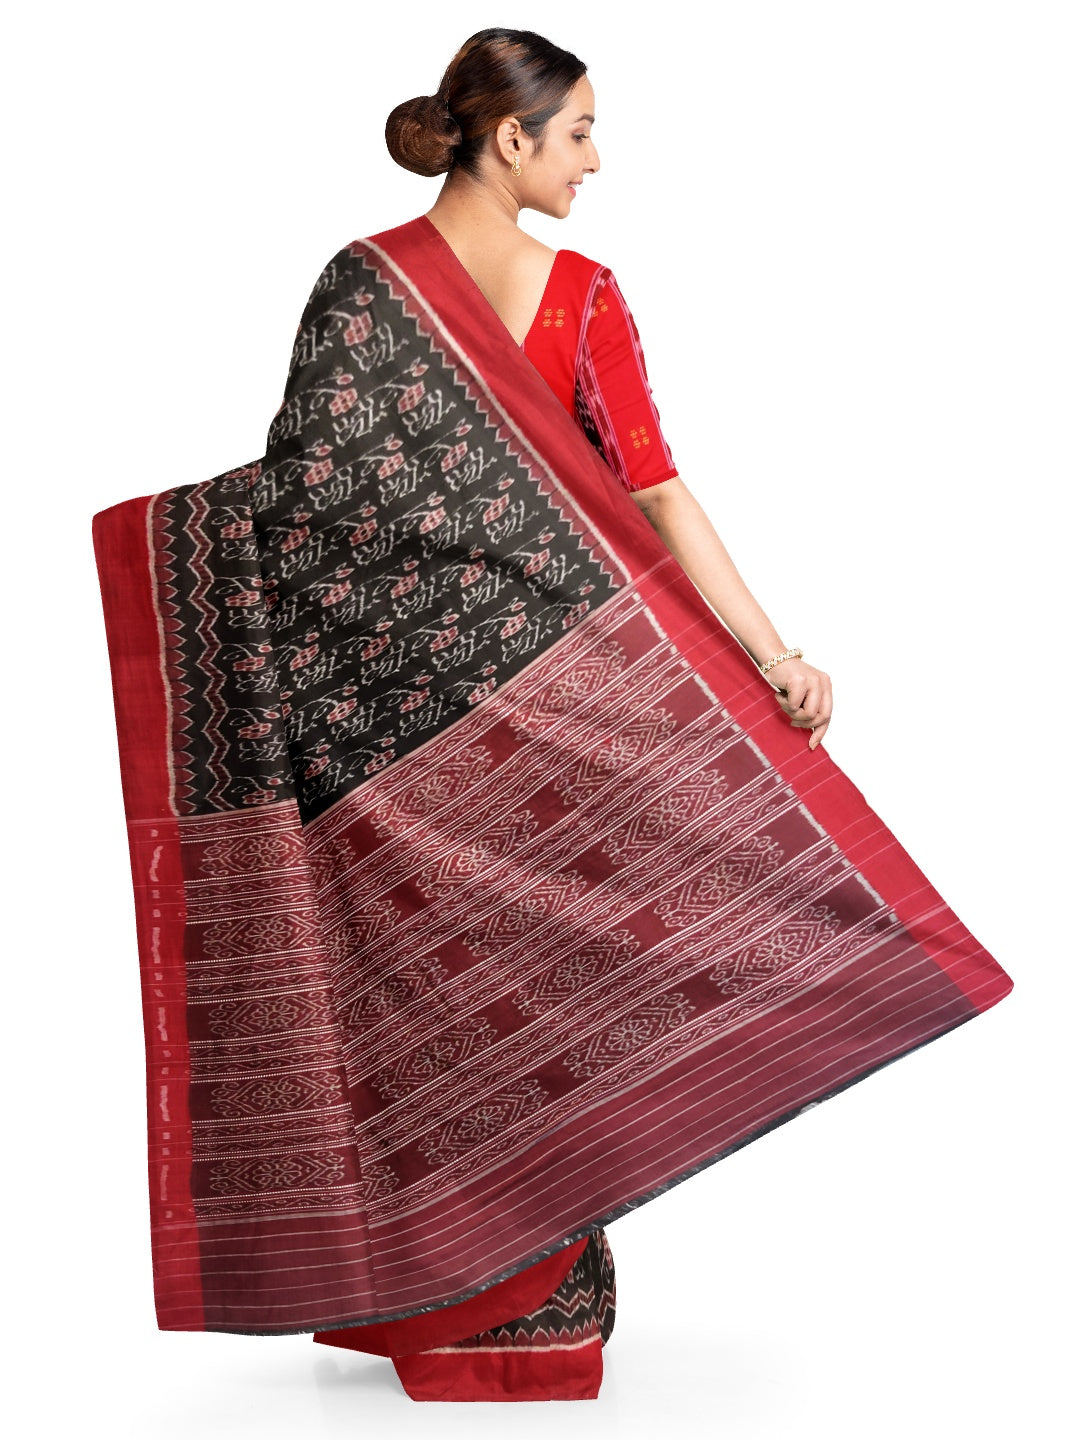 Black Sambalpuri Ikat Cotton Saree with matching blouse piece